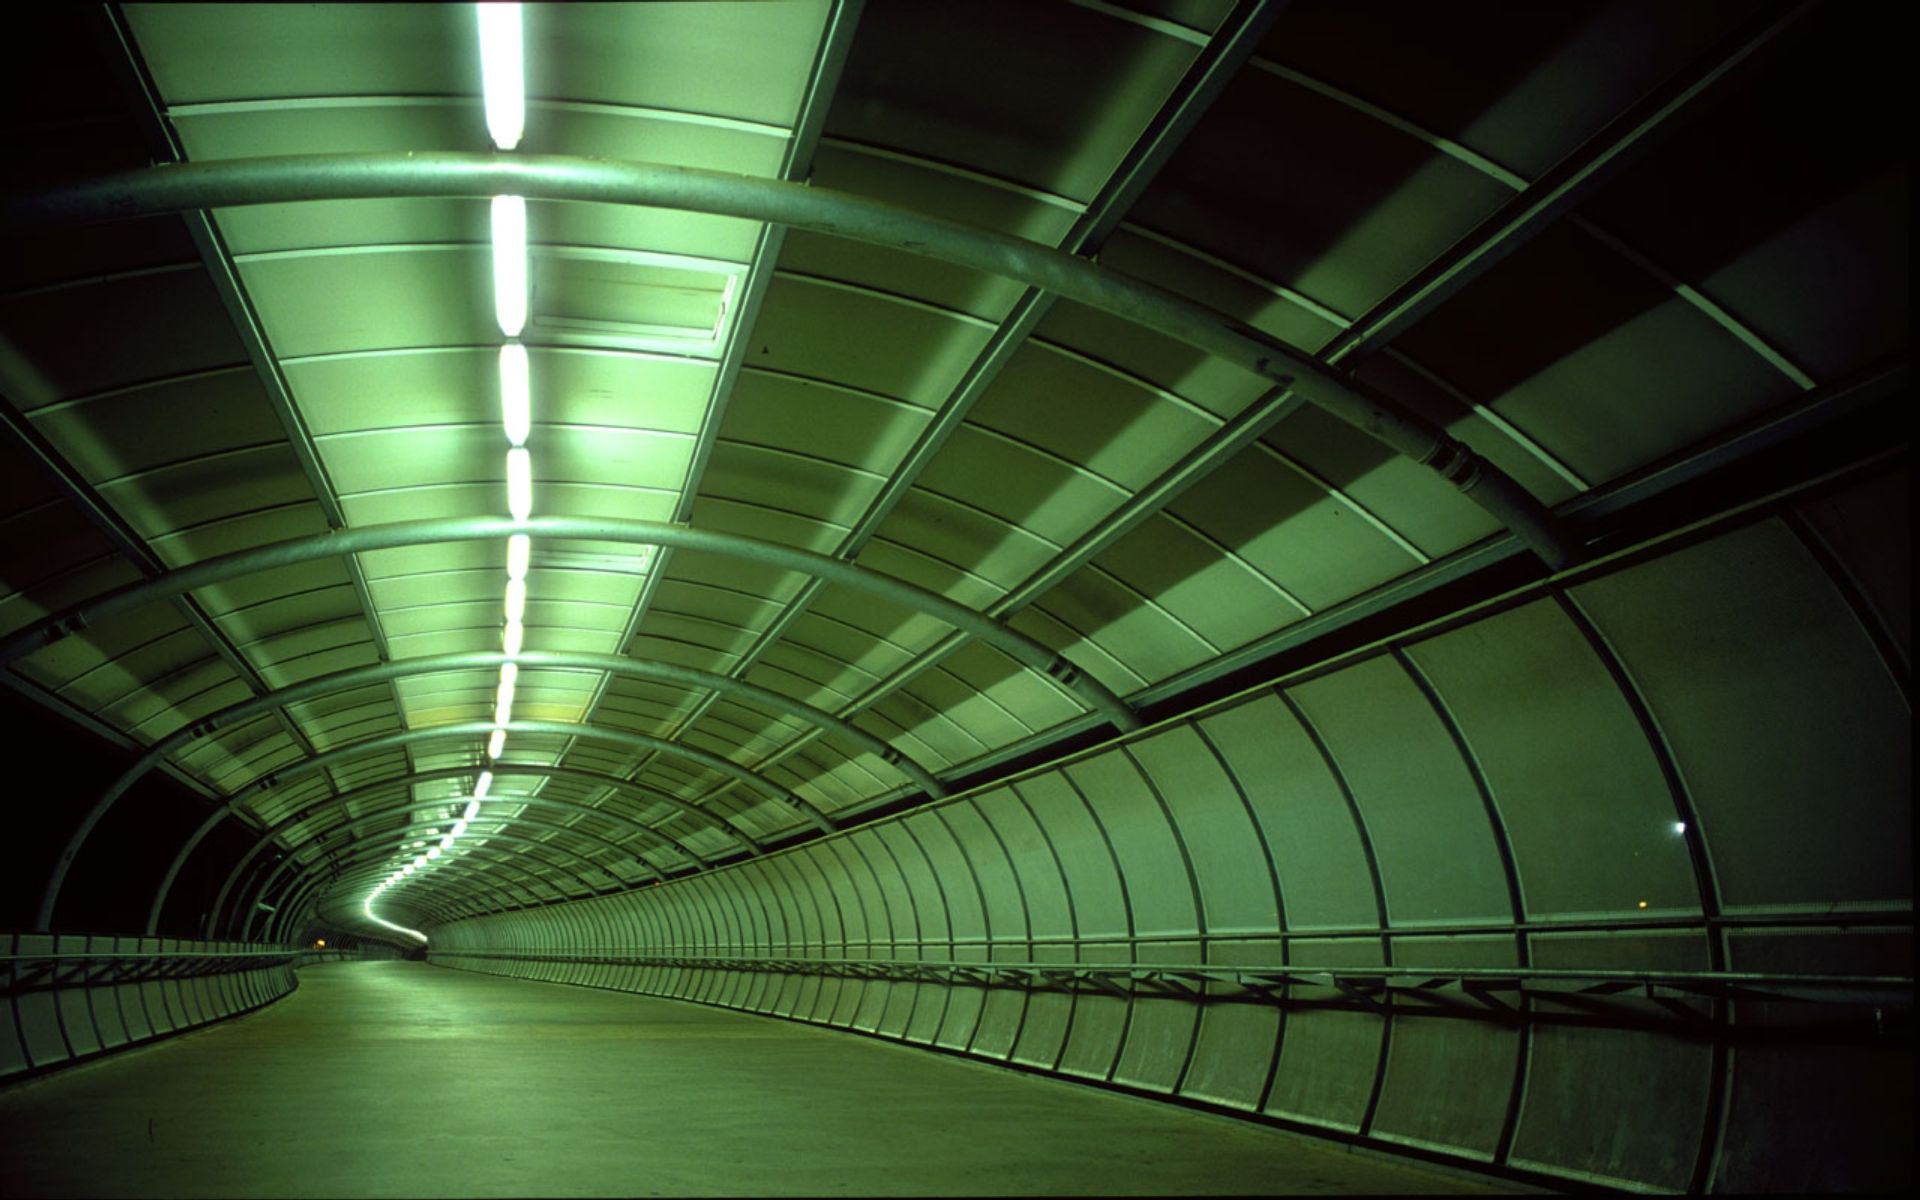 عکس تونل زیرزمینی طویل مستحکم با تم رنگی سبز نورانی